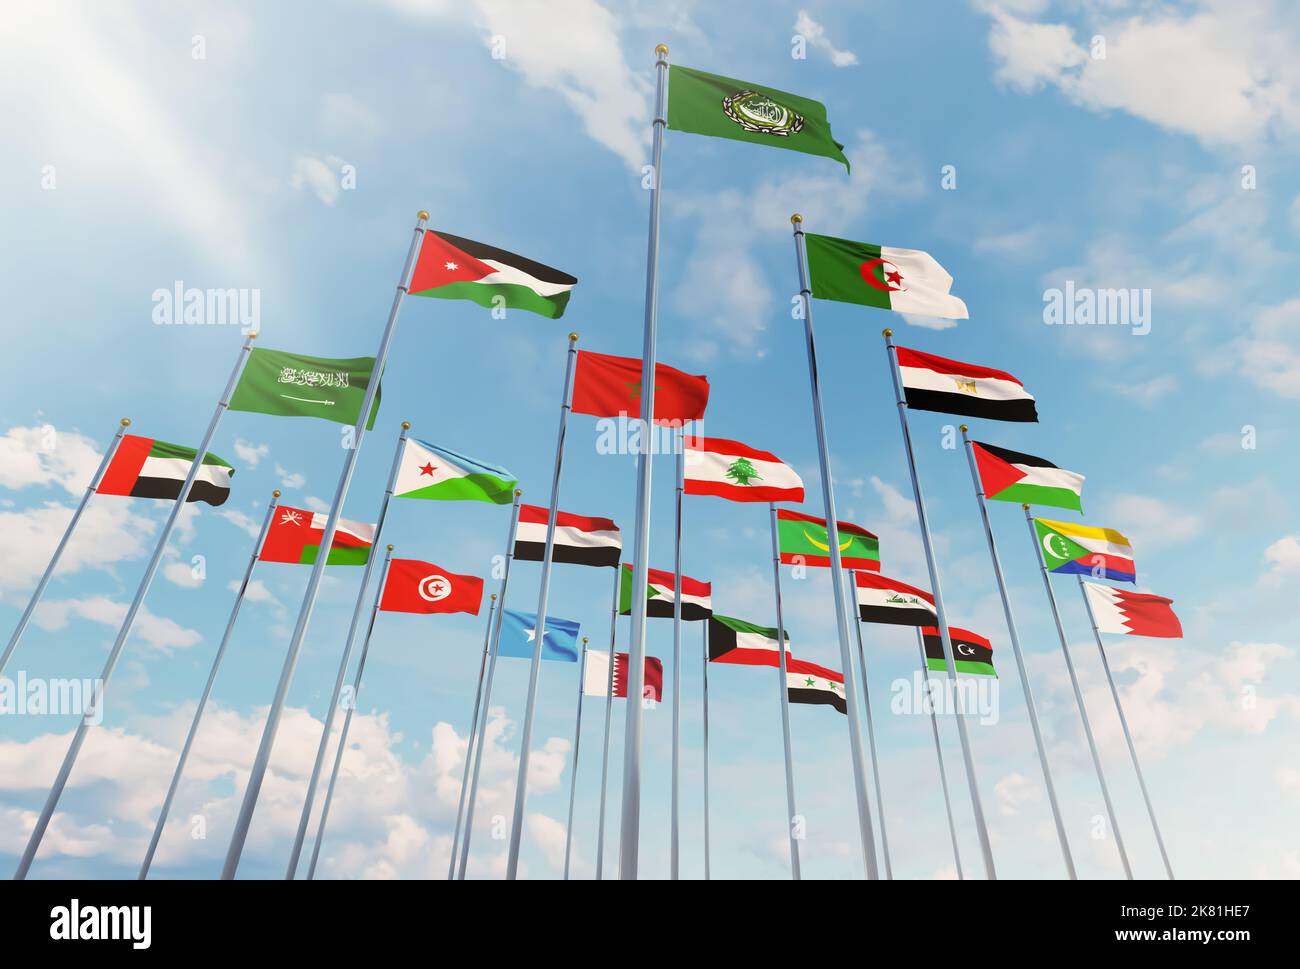 Ligue des États arabes, les drapeaux des 22 pays arabes s'élantent dans le ciel avec le drapeau de la Ligue des États arabes Banque D'Images